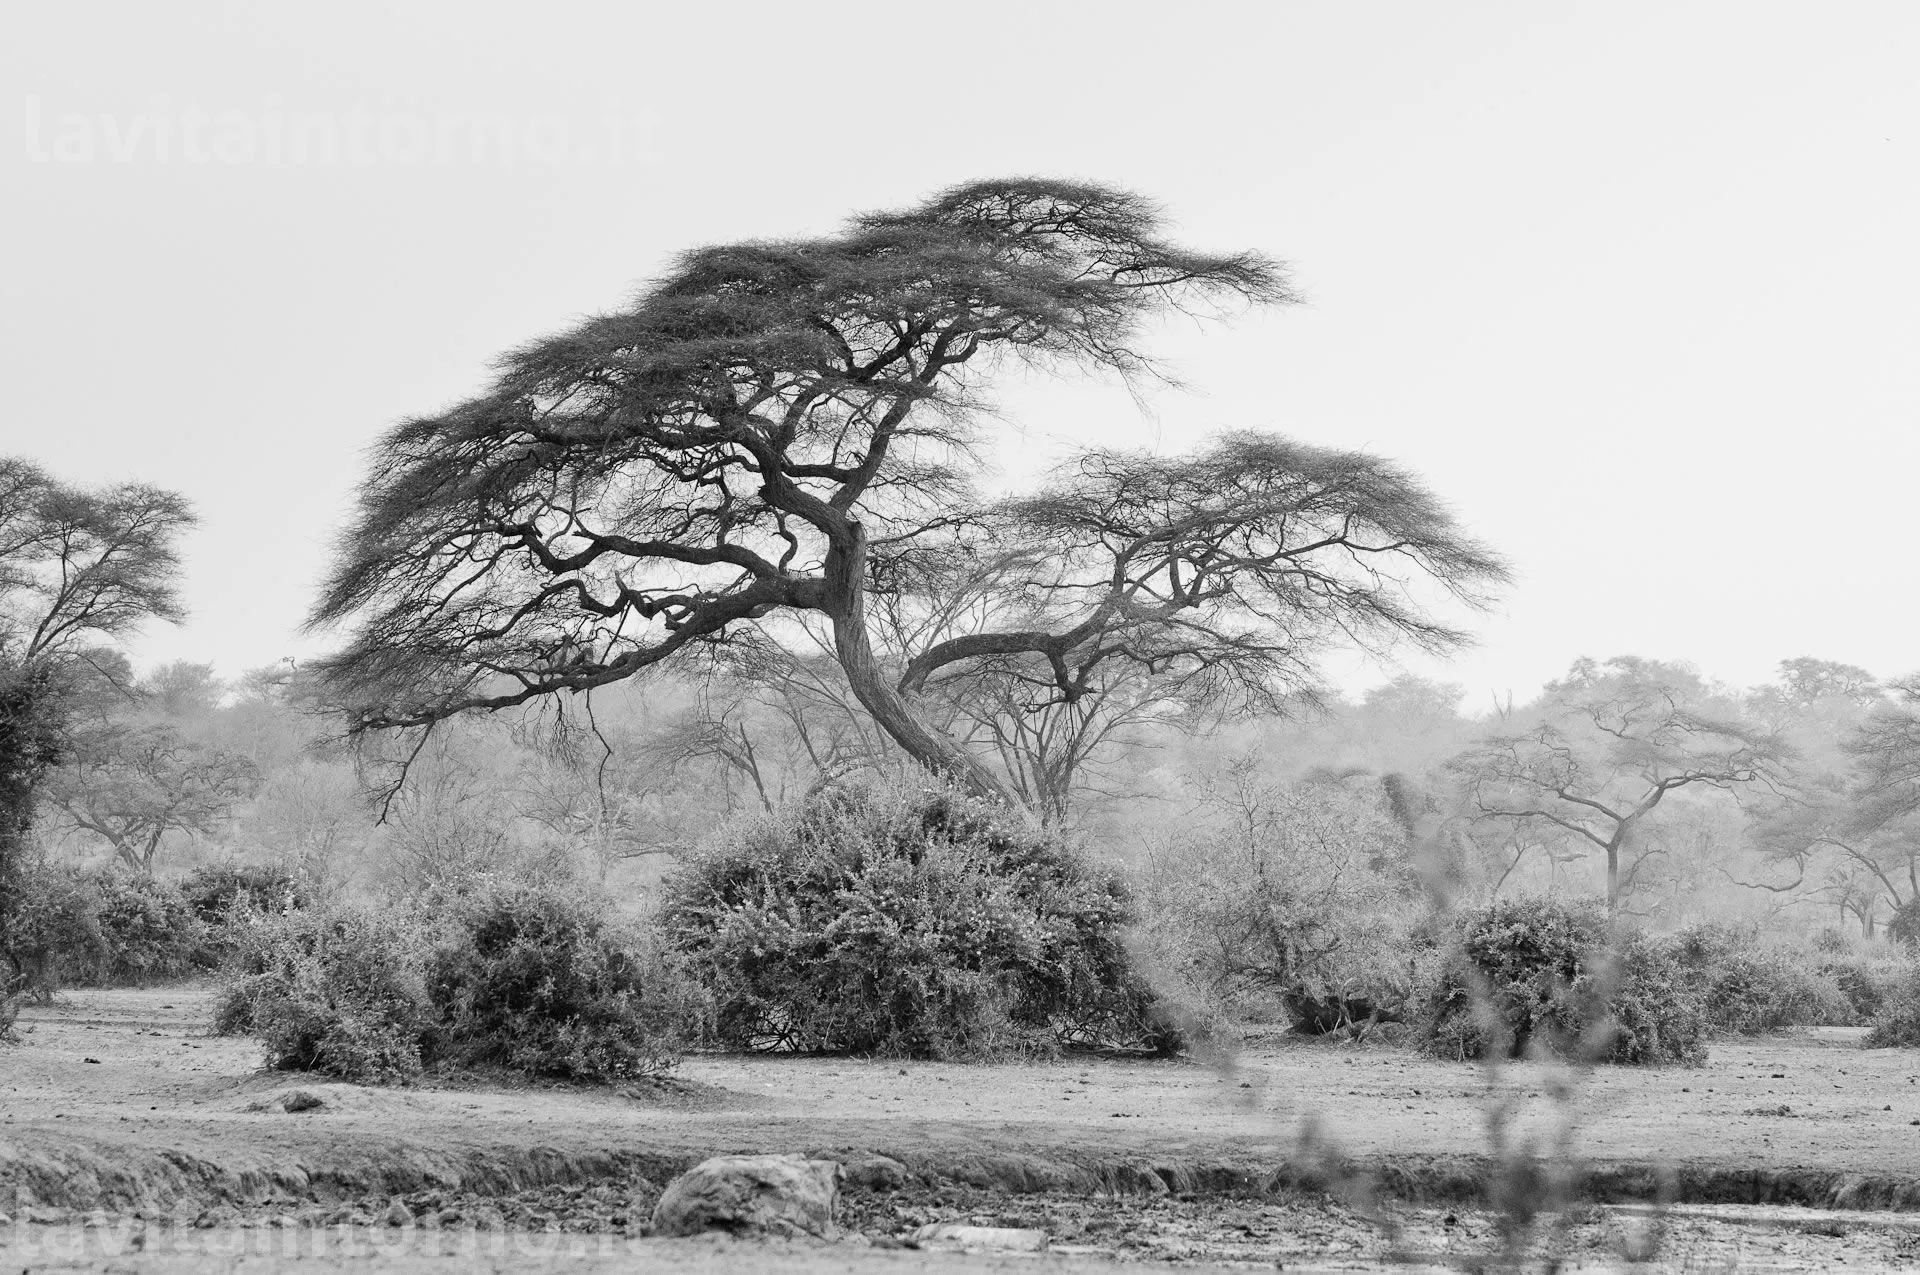 Okavango BW #4
D300
Nikkor 70-200 F/2.8 AF-S VR